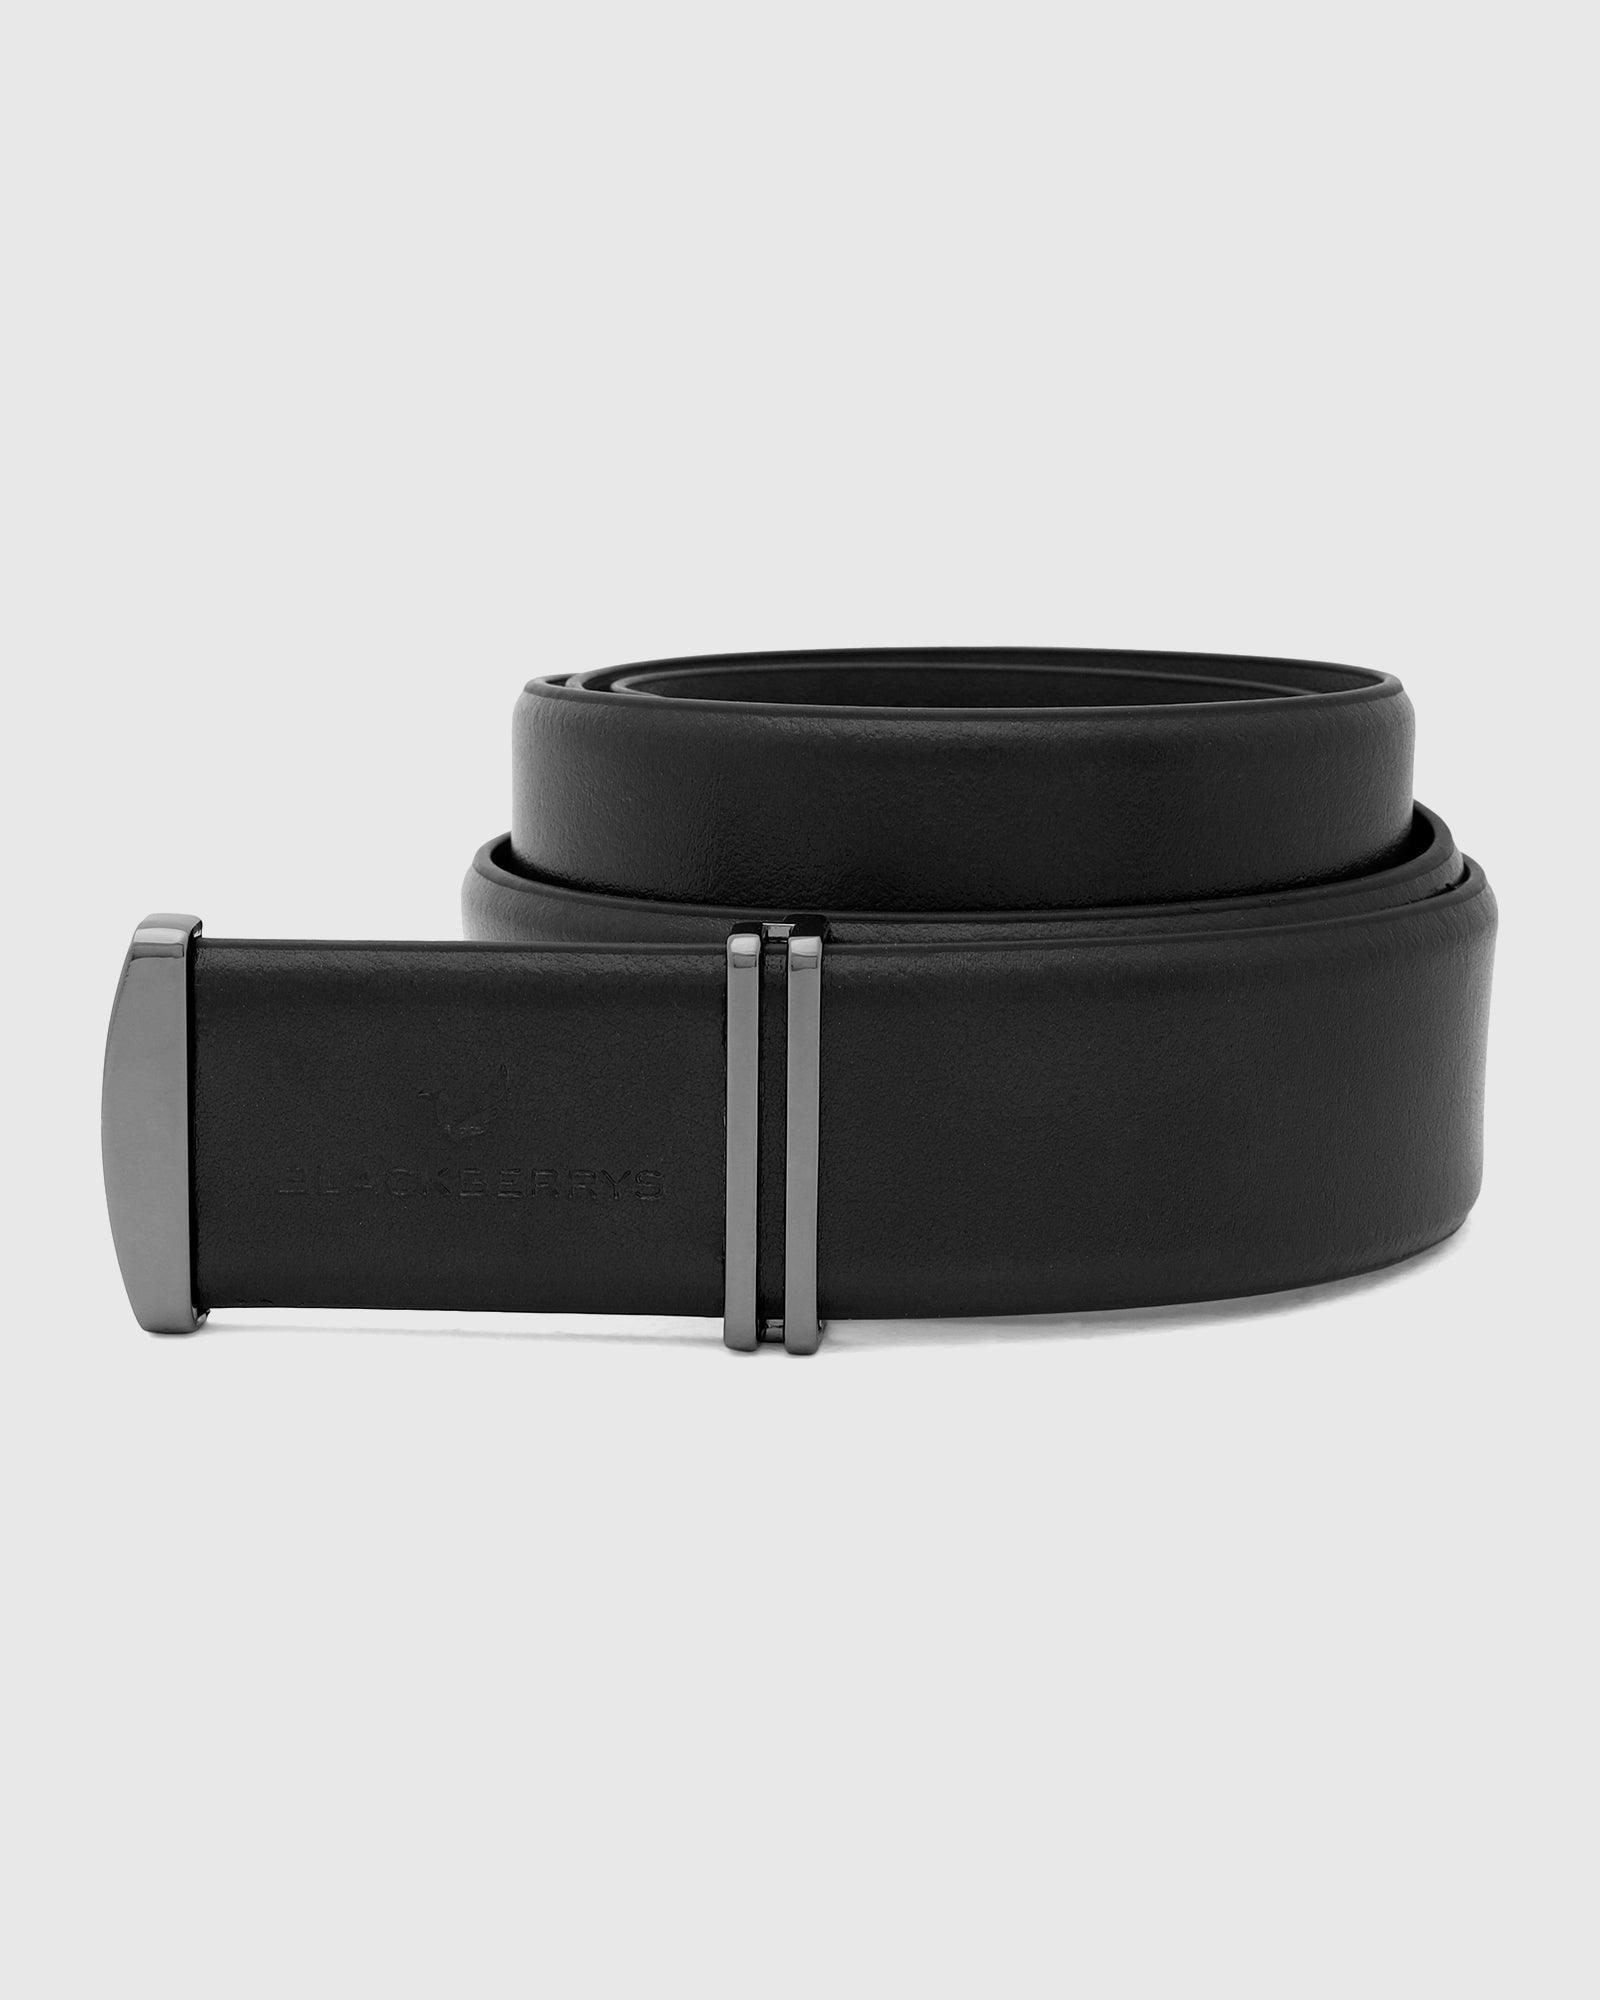 Leather Black Solid Belt New Philip For Men